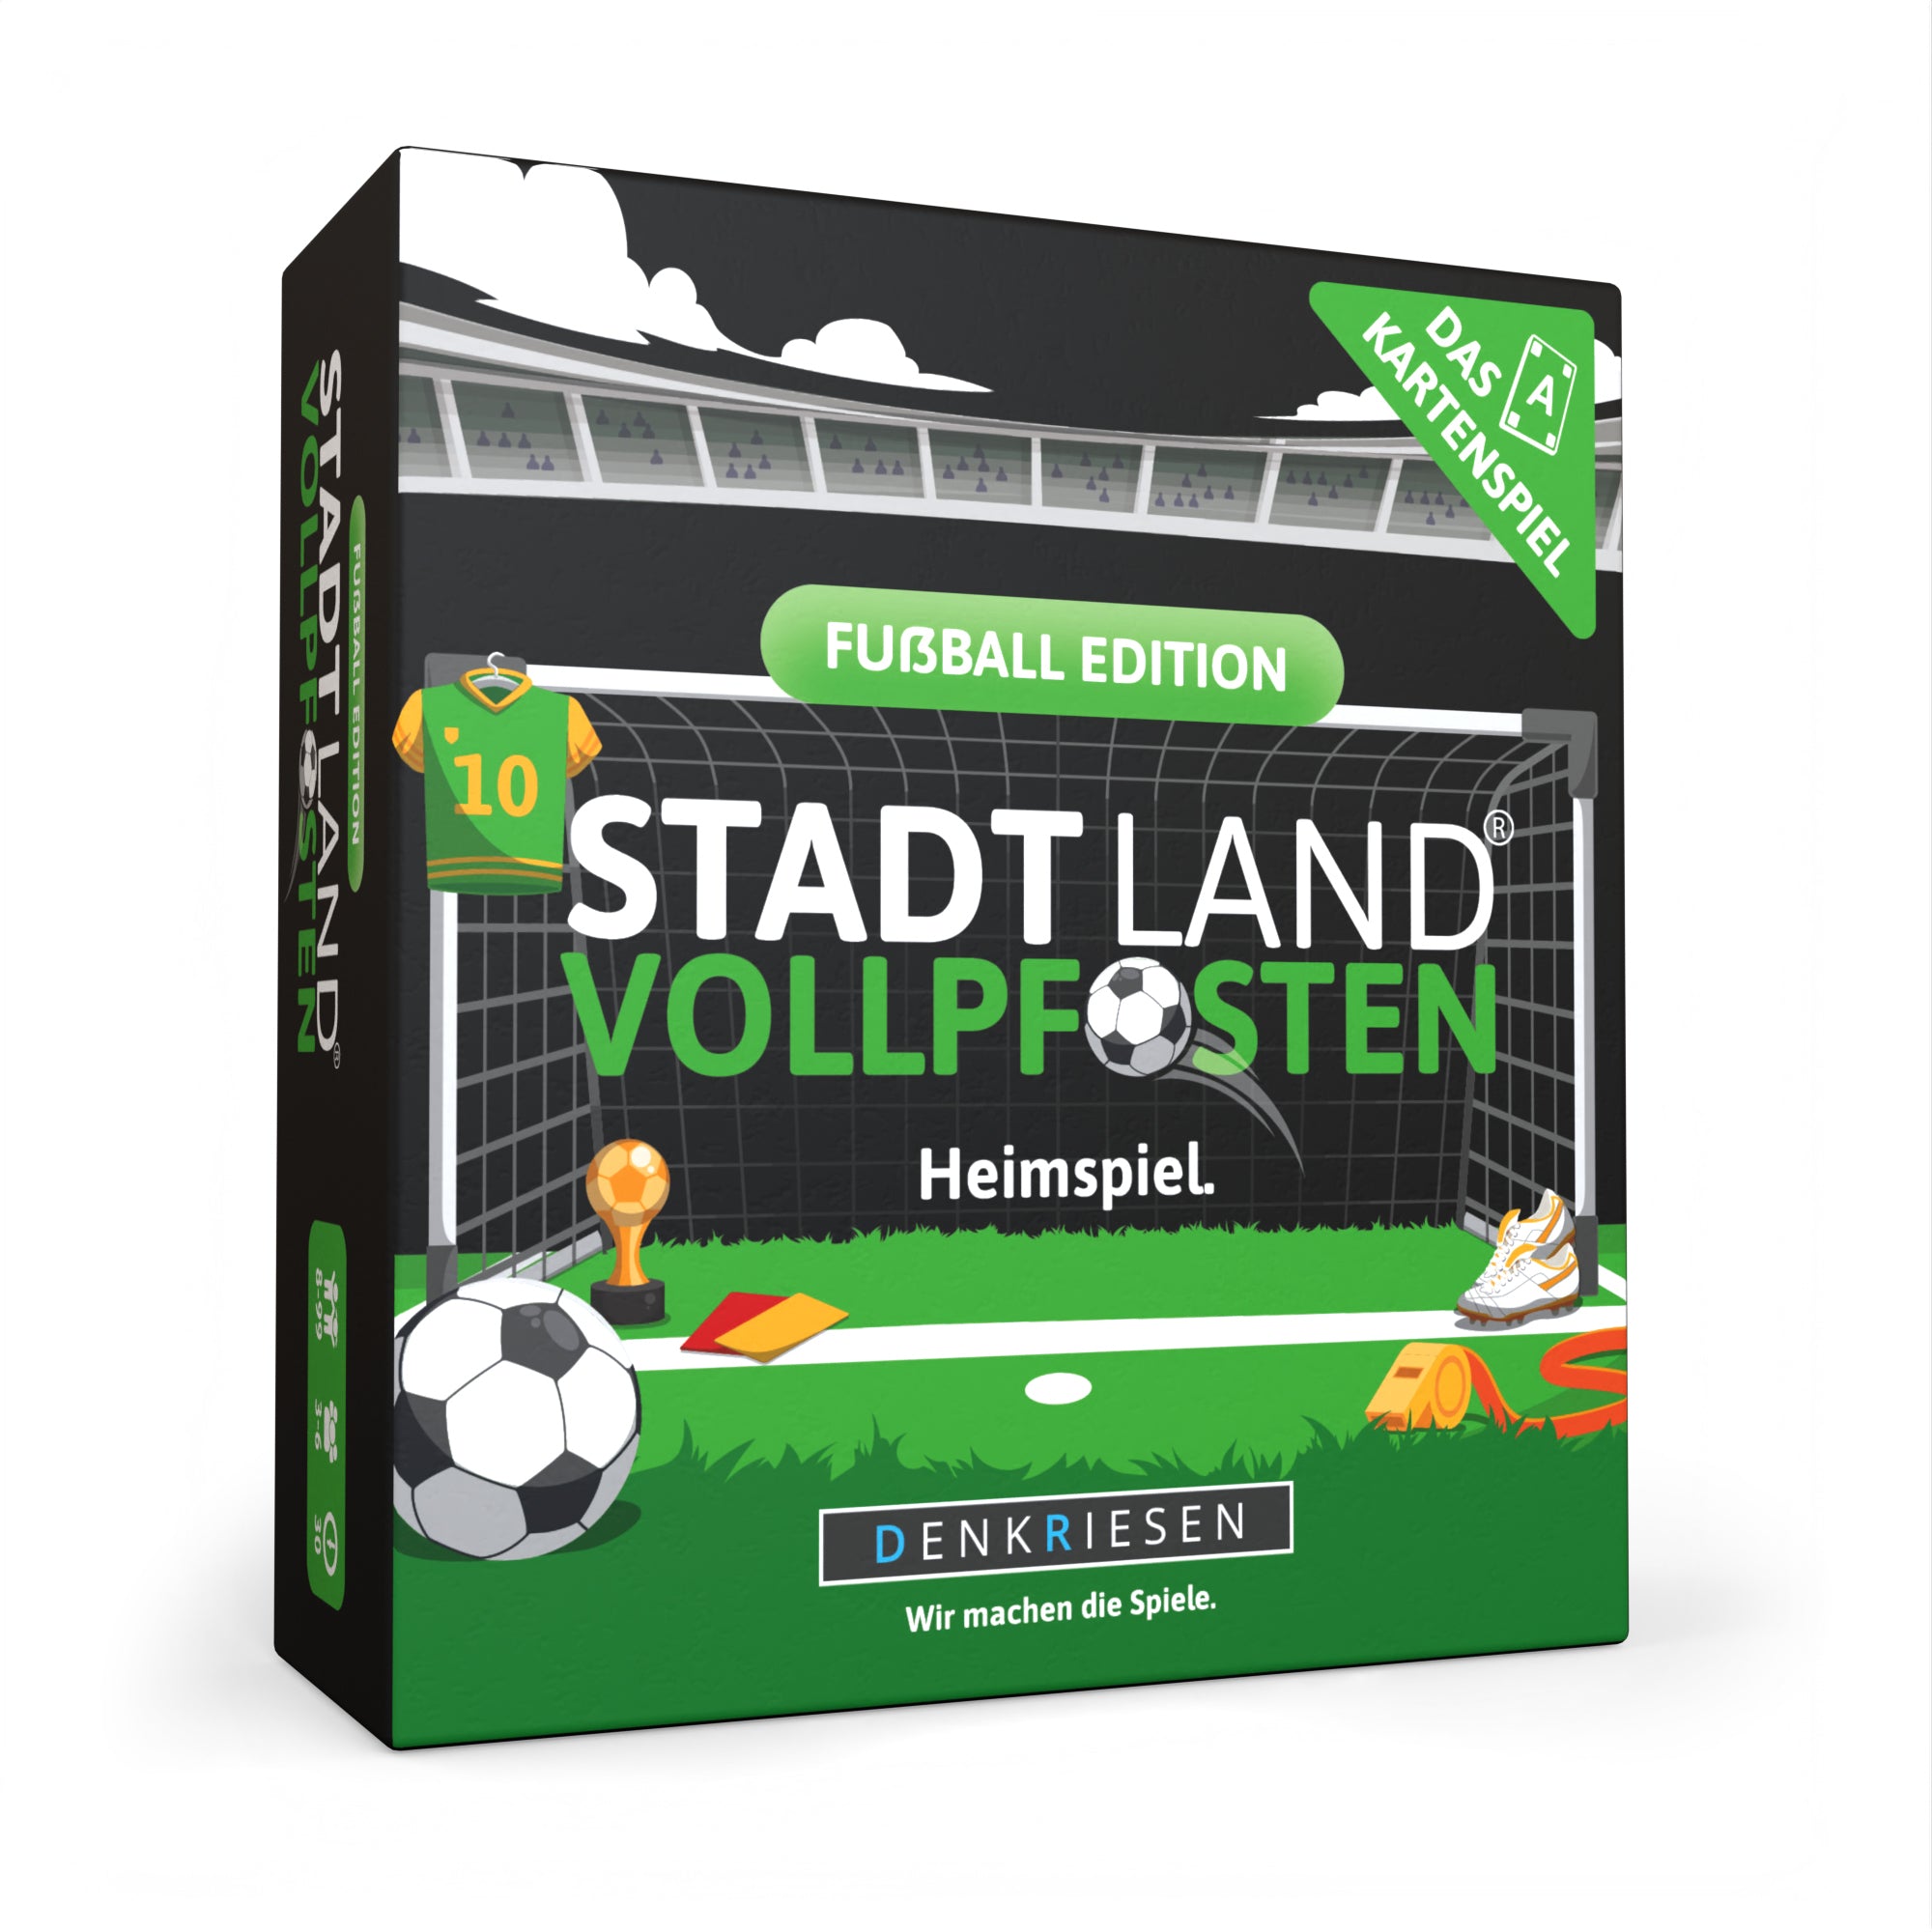 STADT LAND VOLLPFOSTEN® - Das Kartenspiel – FUßBALL EDITION - "Heimspiel."